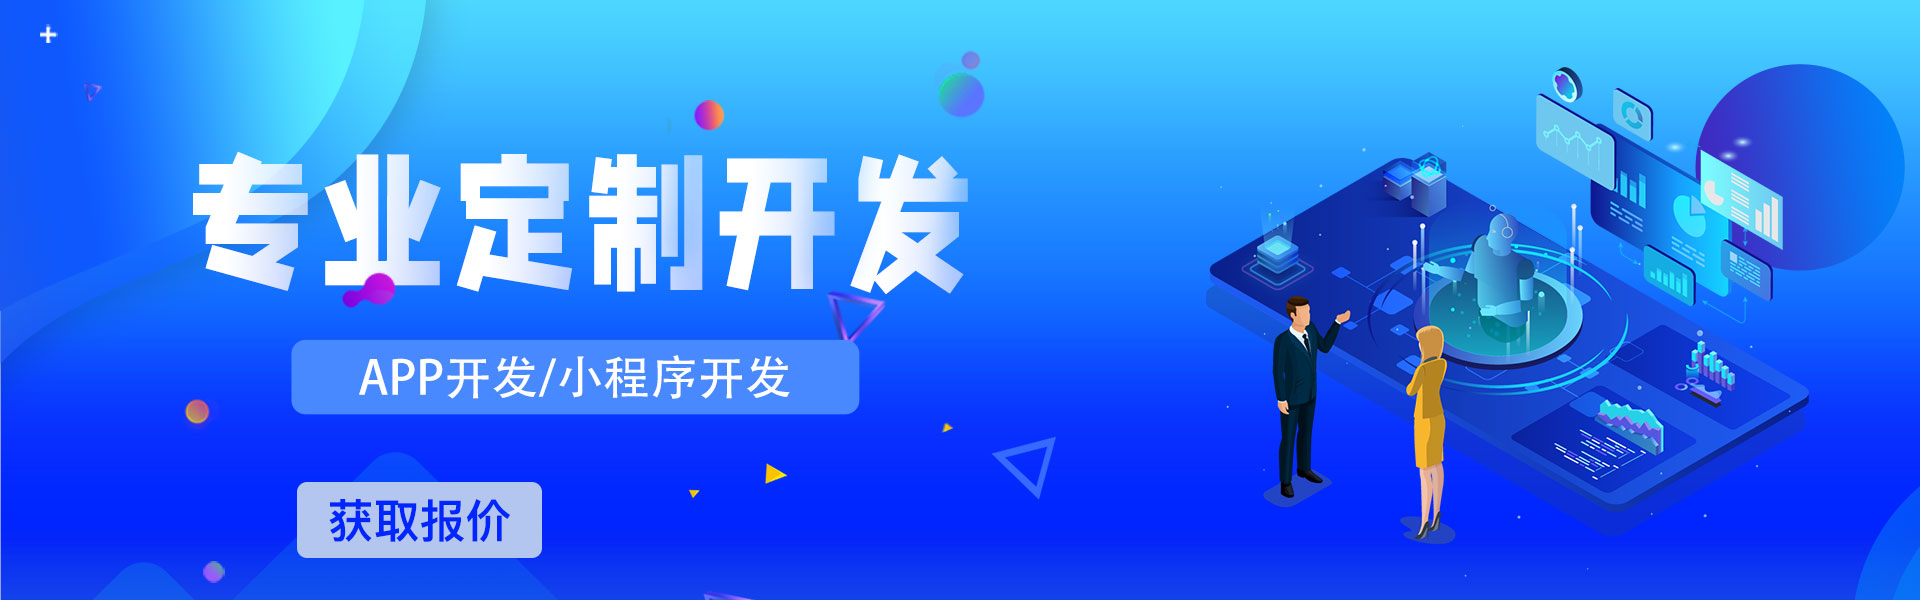 慧族网络19年实体百人开发团队